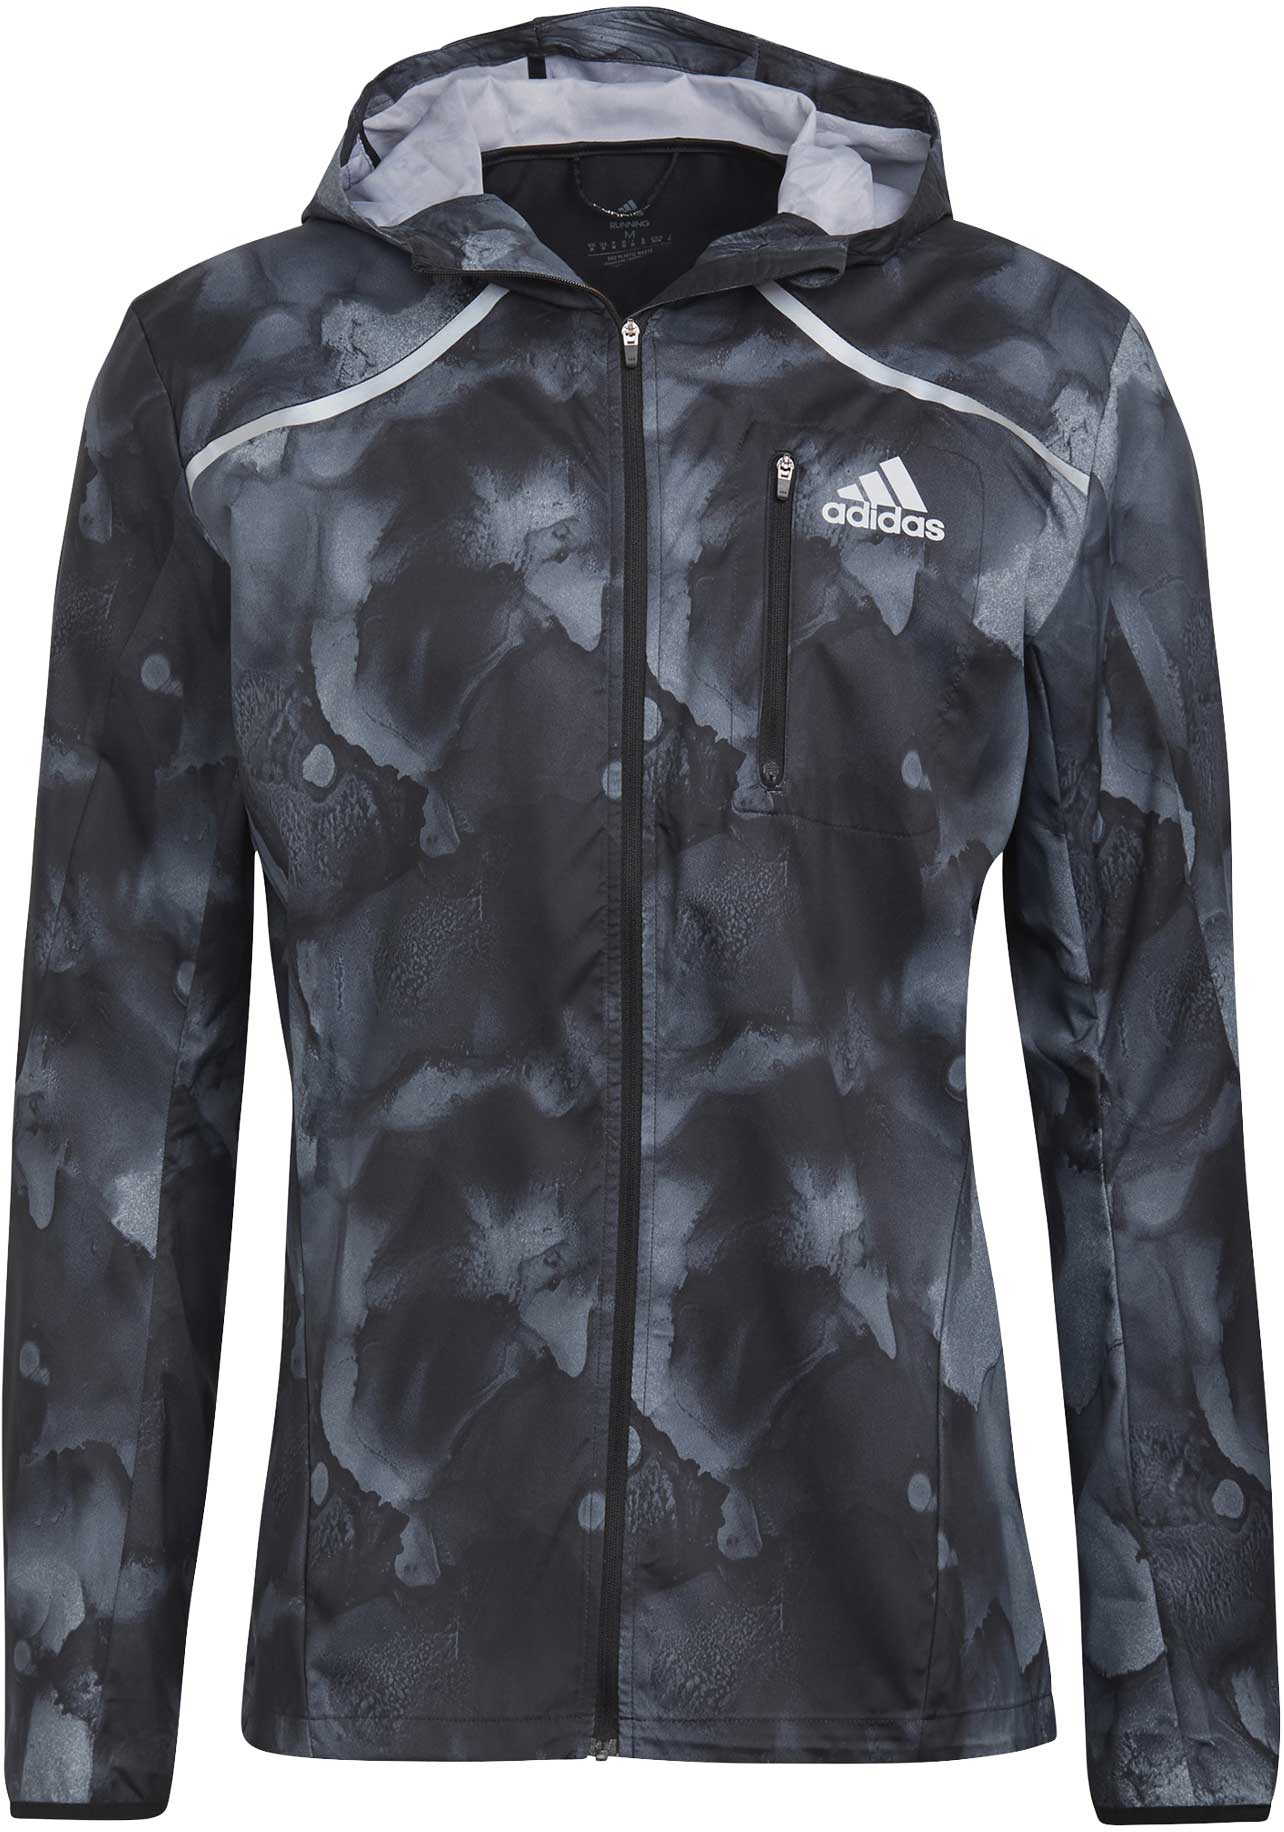 Men's running jacket